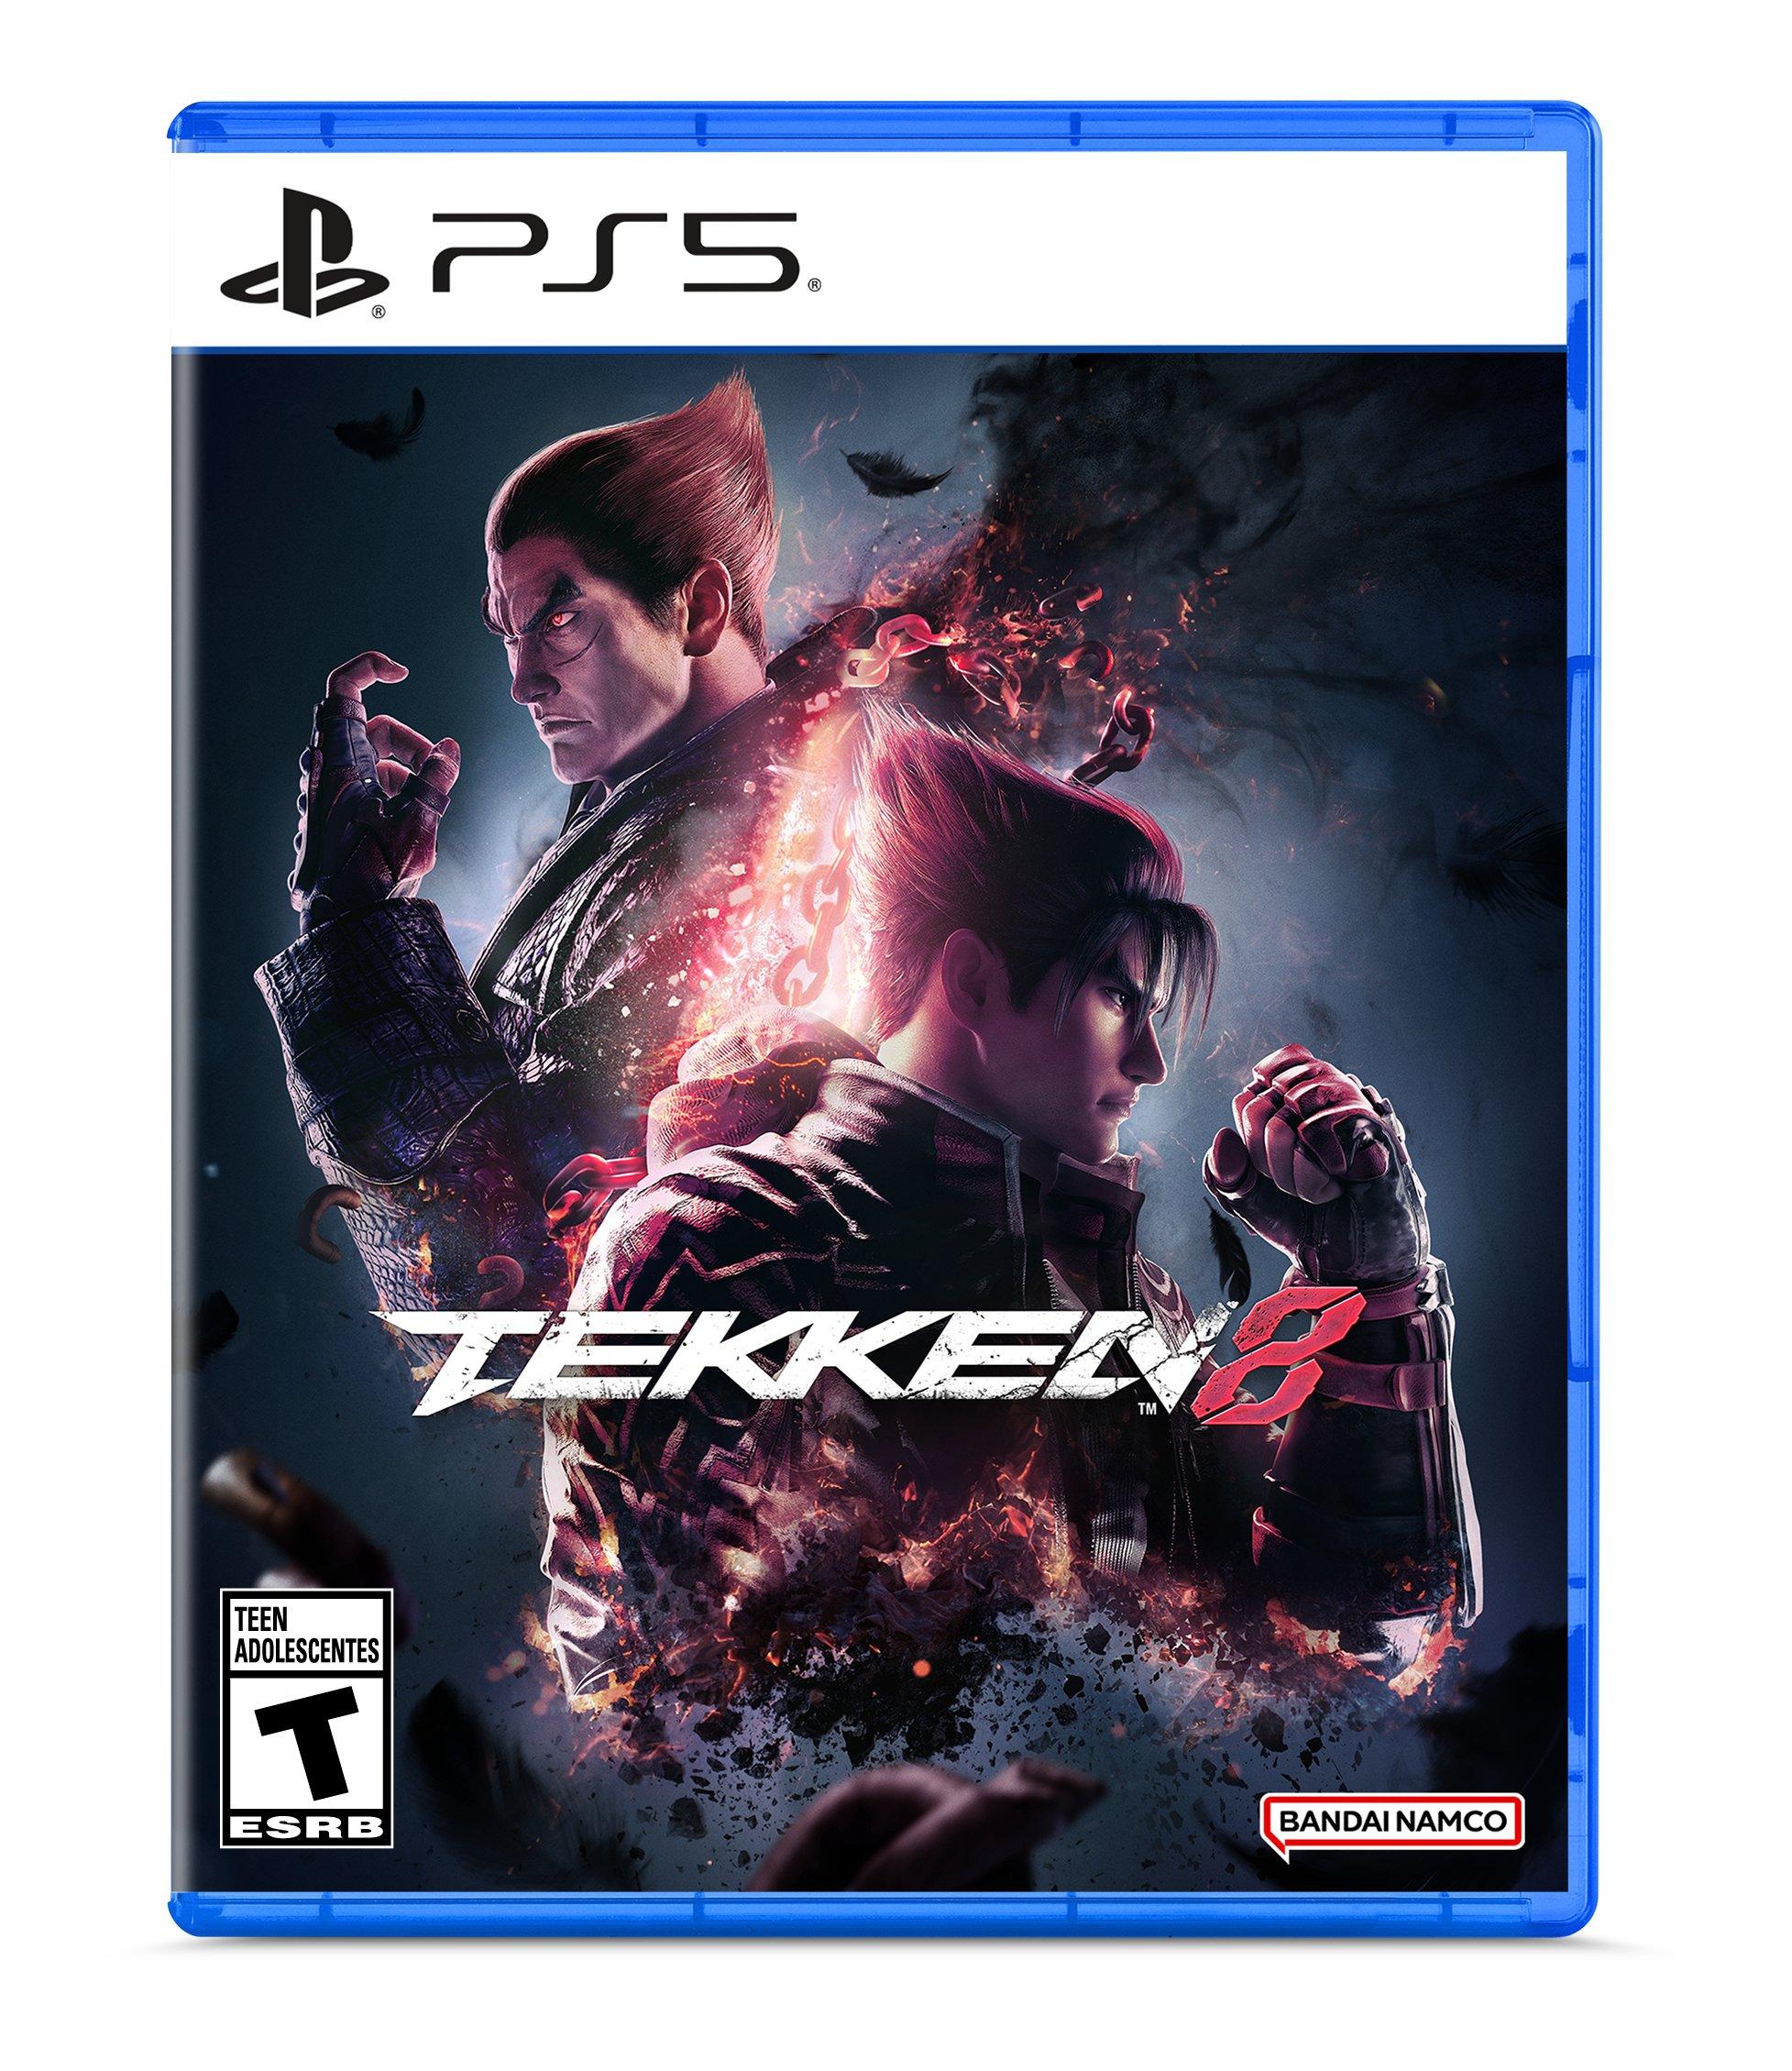 Tekken 8 recebe data oficial de lançamento